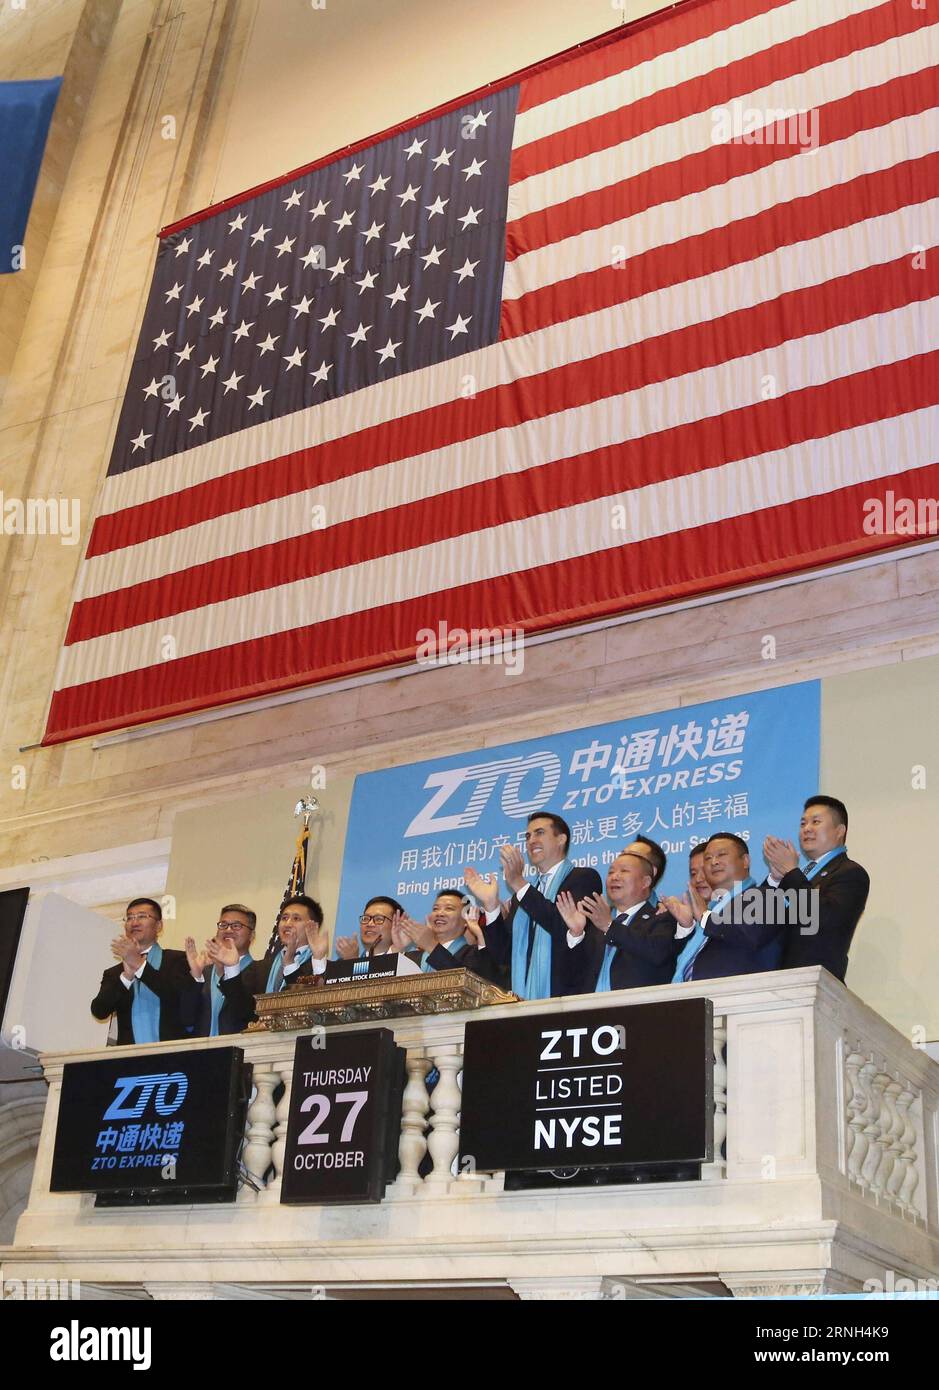 Lai Meisong (5th L), fondatore e presidente di China S ZTO Express, applaude dopo aver suonato la campana di apertura alla Borsa di New York a New York, Stati Uniti, 27 ottobre 2016. ZTO Express della Cina ha iniziato a fare trading con il simbolo ZTO alla Borsa di New York giovedì, dopo aver raccolto oltre 1,4 miliardi di dollari nella sua offerta pubblica iniziale - la più grande negli Stati Uniti finora quest'anno. ) (cyc) U.S.-NEW YORK-NYSE-CHINA-ZTO IPO WangxYing PUBLICATIONxNOTxINxCHN Lai 5th l fondatore e presidente della China S ZTO Shipping applaude dopo aver suonato la campana di apertura AL New York Stick Exc Foto Stock